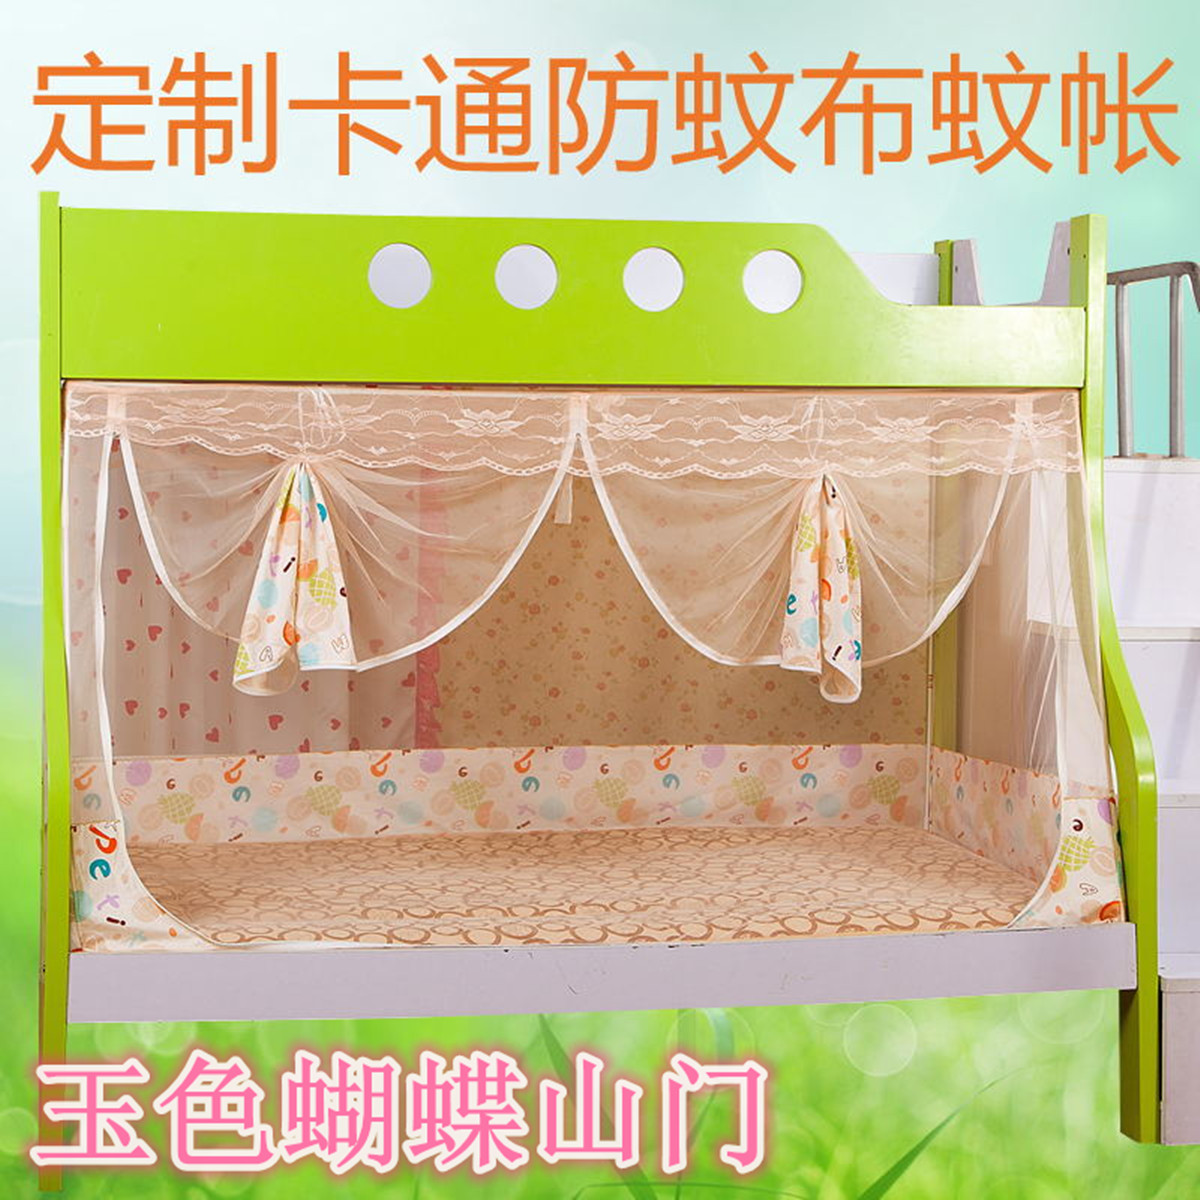 定做子母床蚊帐/上下儿童床/双层床1.2/蚊帐/O儿童床蚊帐/订做包